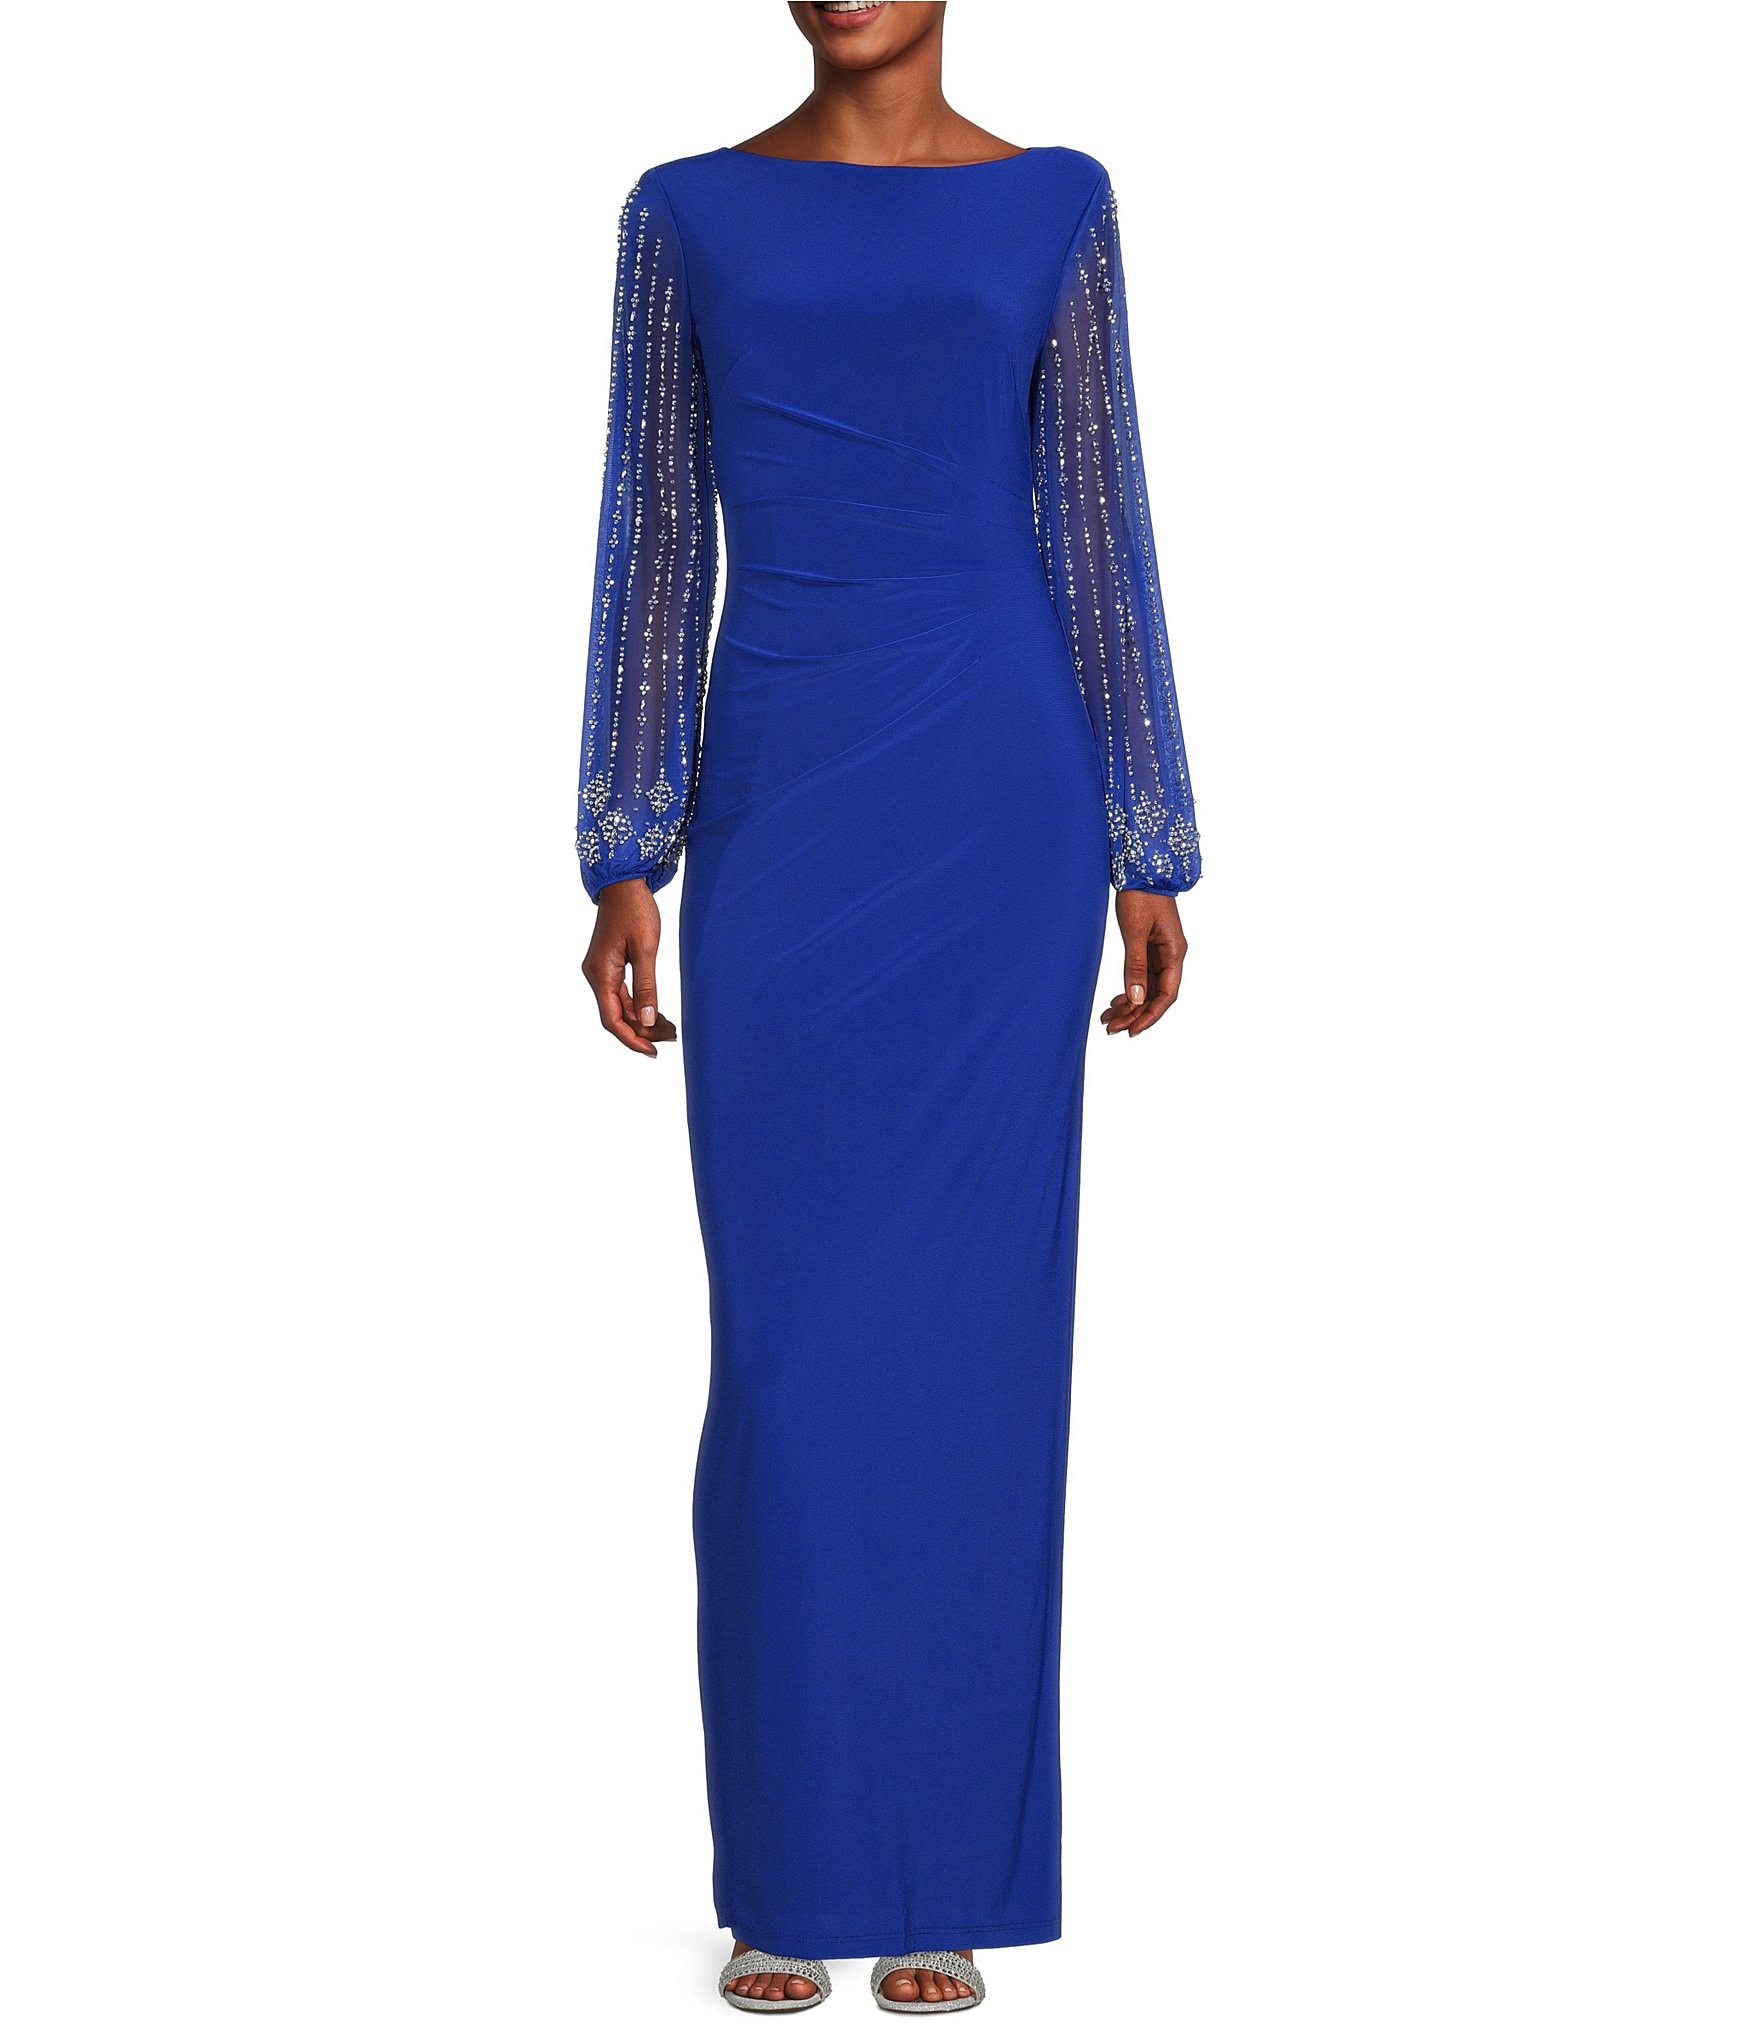 Light Blue Chiffon Long Sleeve Maxi Dress– PinkBlush